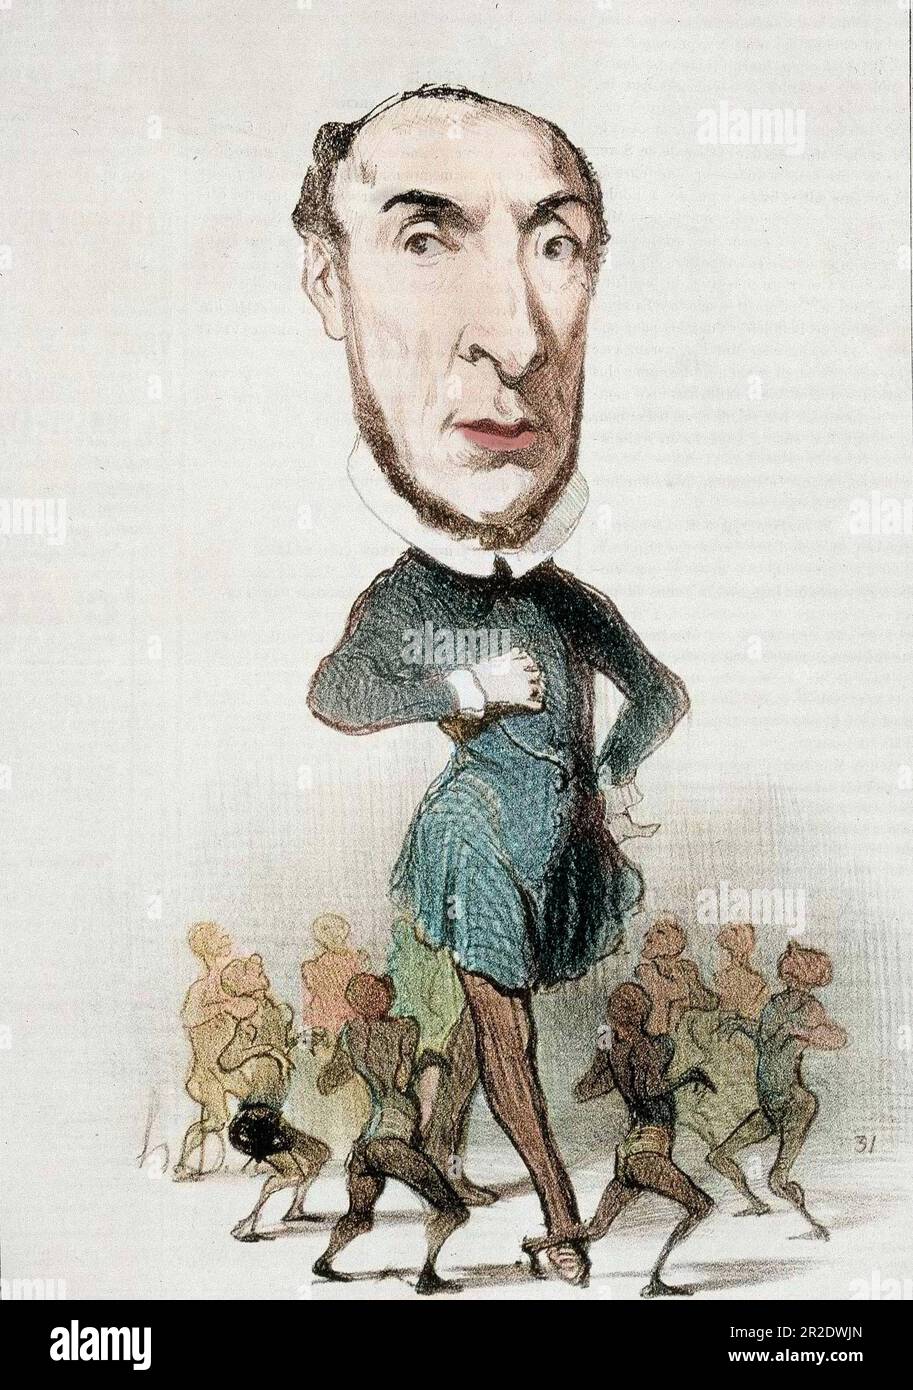 Caricature sur Victor Schoelcher et l'abolition de l'esclavage - par Honore Daumier in 'Charivari' du 16/04/1849 - colorié ultérieurement Stock Photo